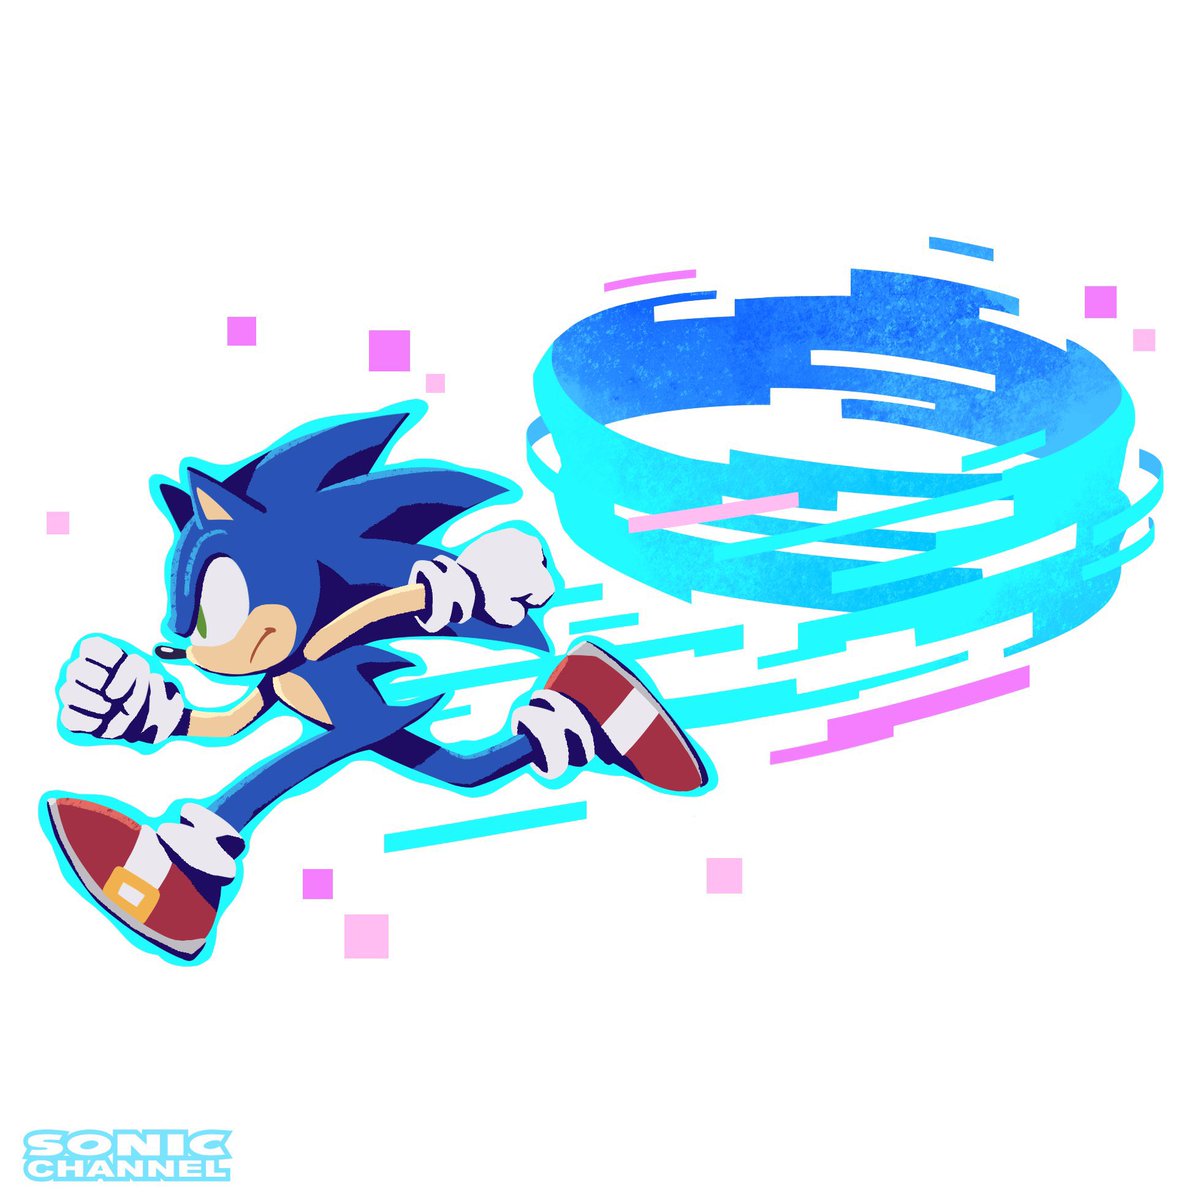 ソニック 「New #SonicFrontiers artwork by Yui Karas」|Tails' Channel · Sonic the Hedgehog News & Updatesのイラスト